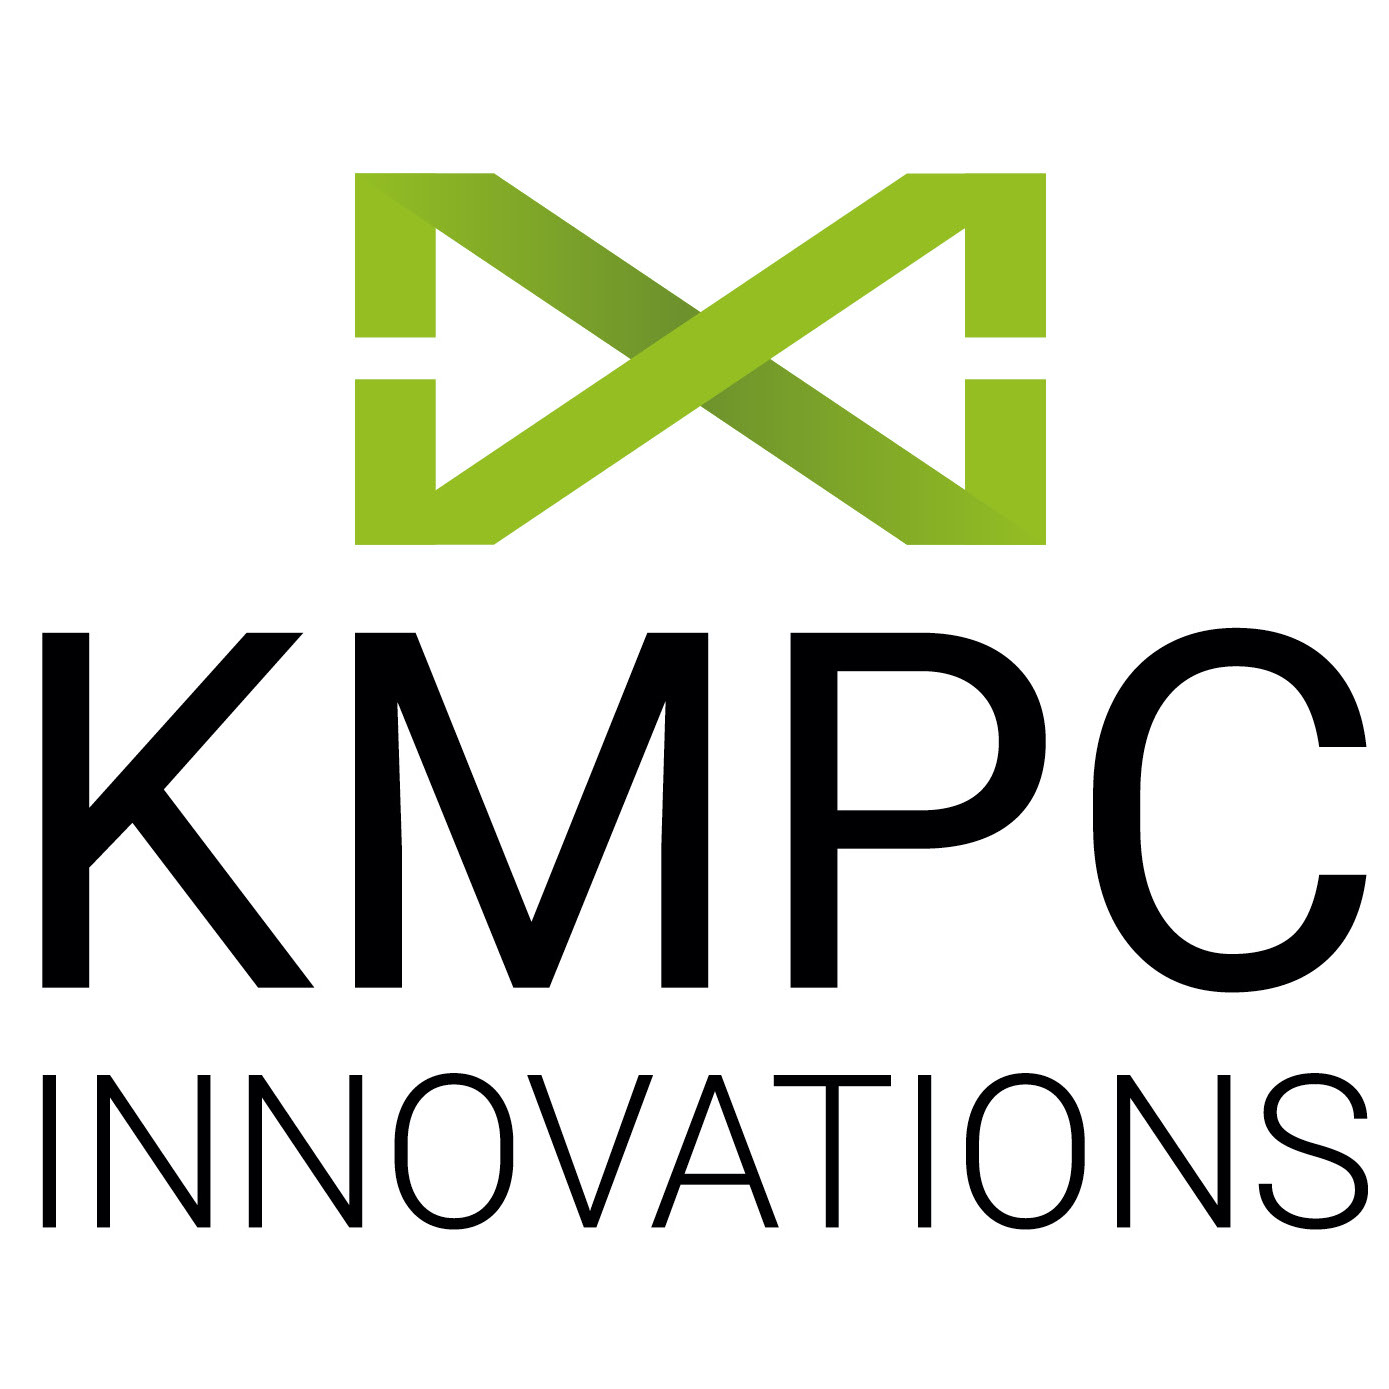 KMPC Innovations